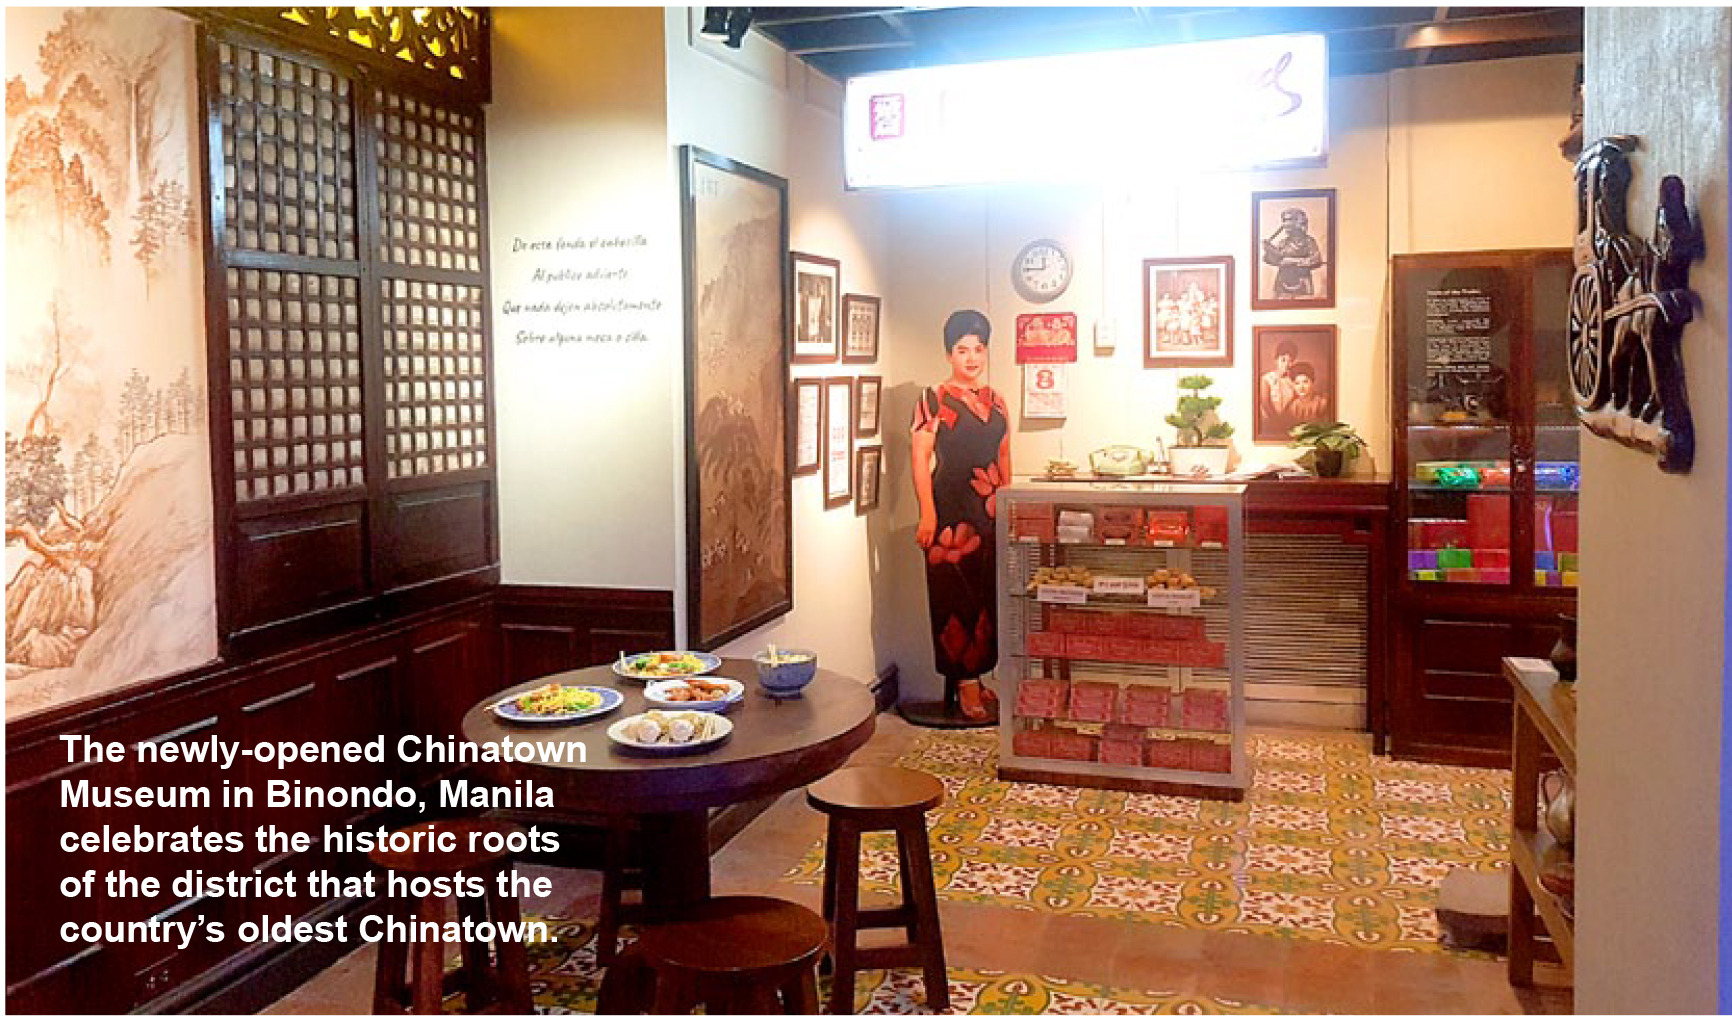 Chinatown Museum